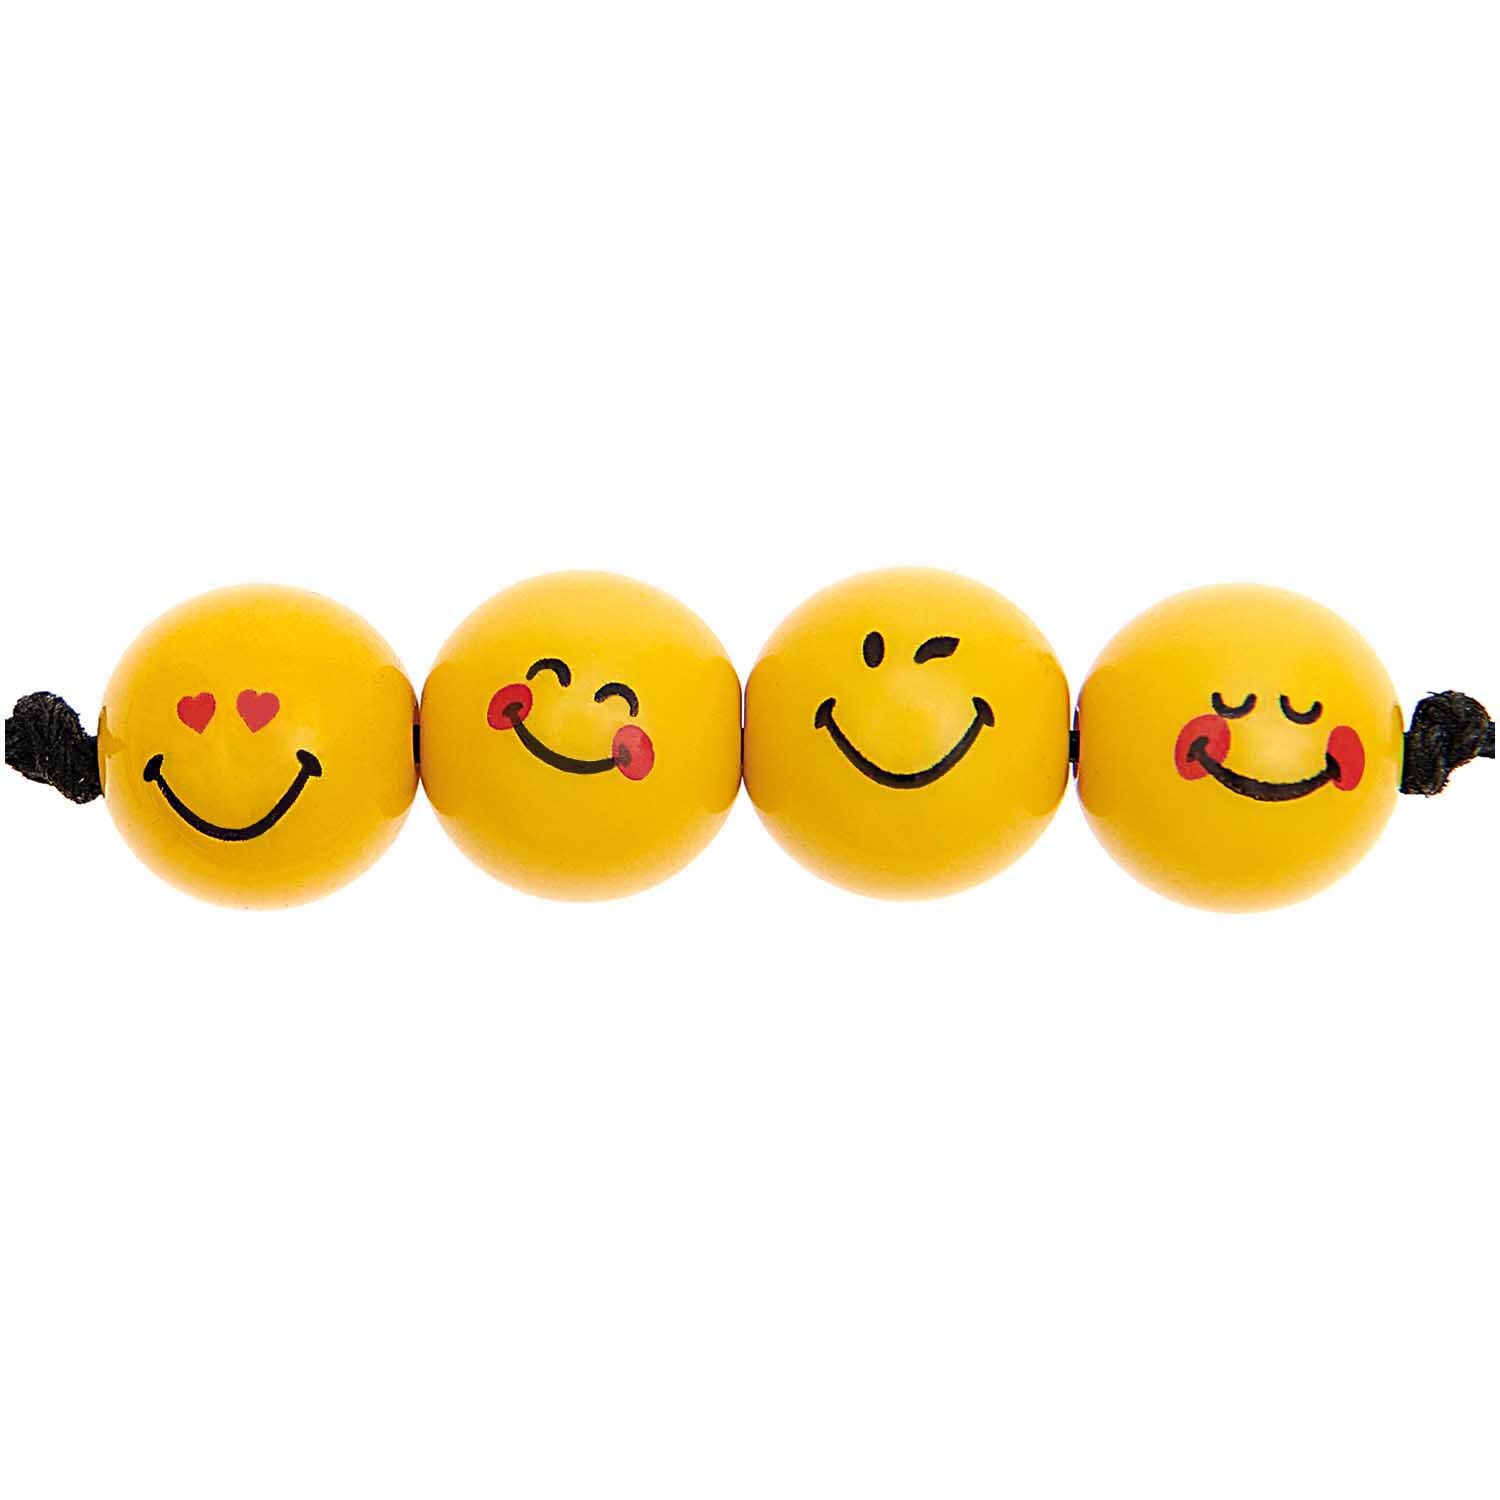 SmileyWorld® Perlen Expressions rund gelb 10mm 21 Stück